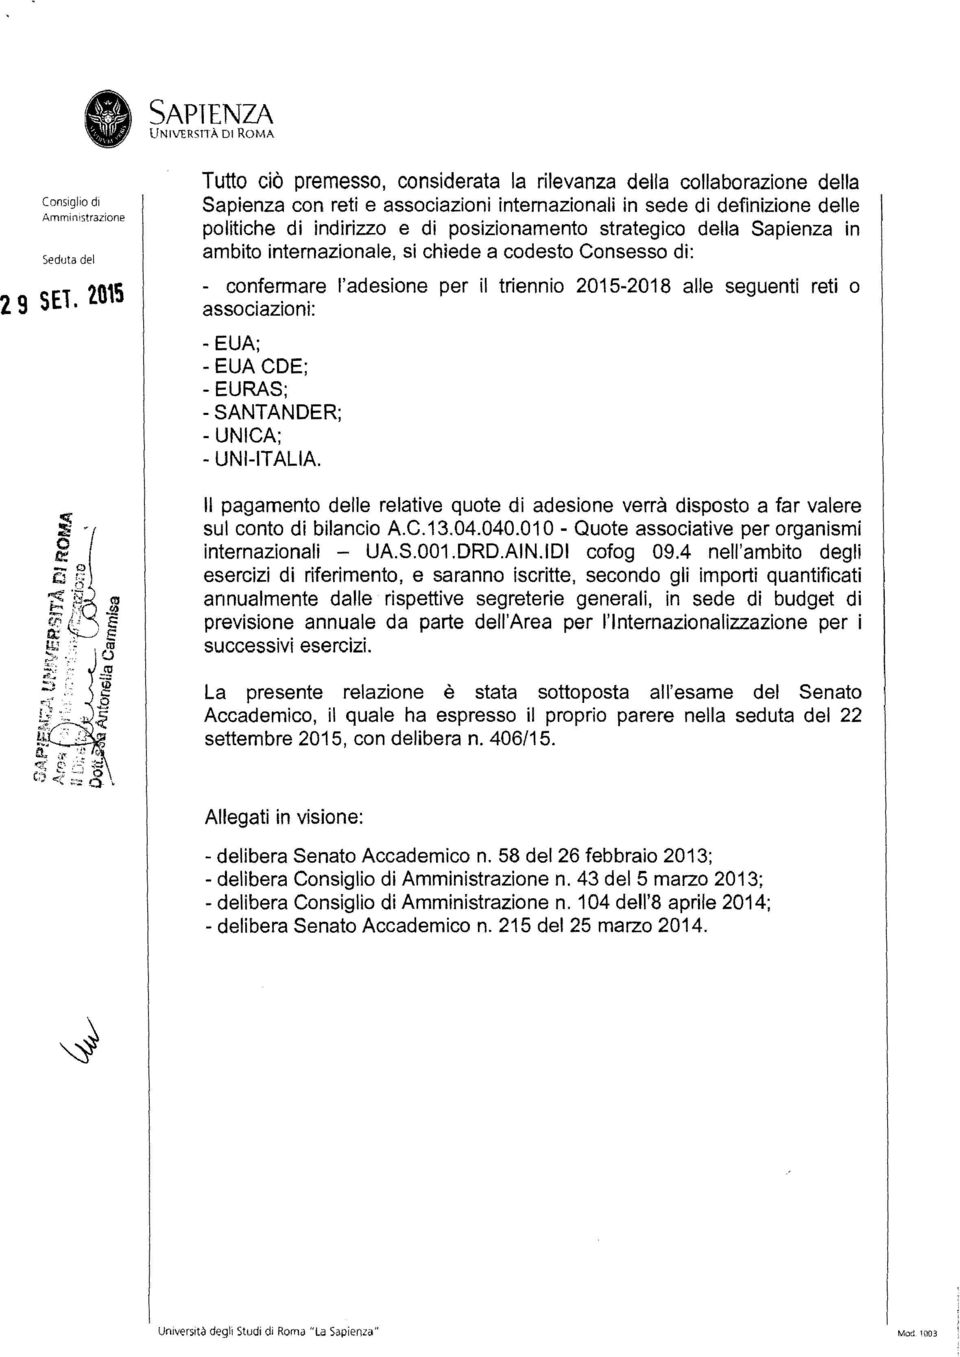 SANTANDER; - UNICA; - UNI-ITALIA. Il pagamento delle relative quote di adesione verrà disposto a far valere sul conto di bilancio A.C.13.04.040.